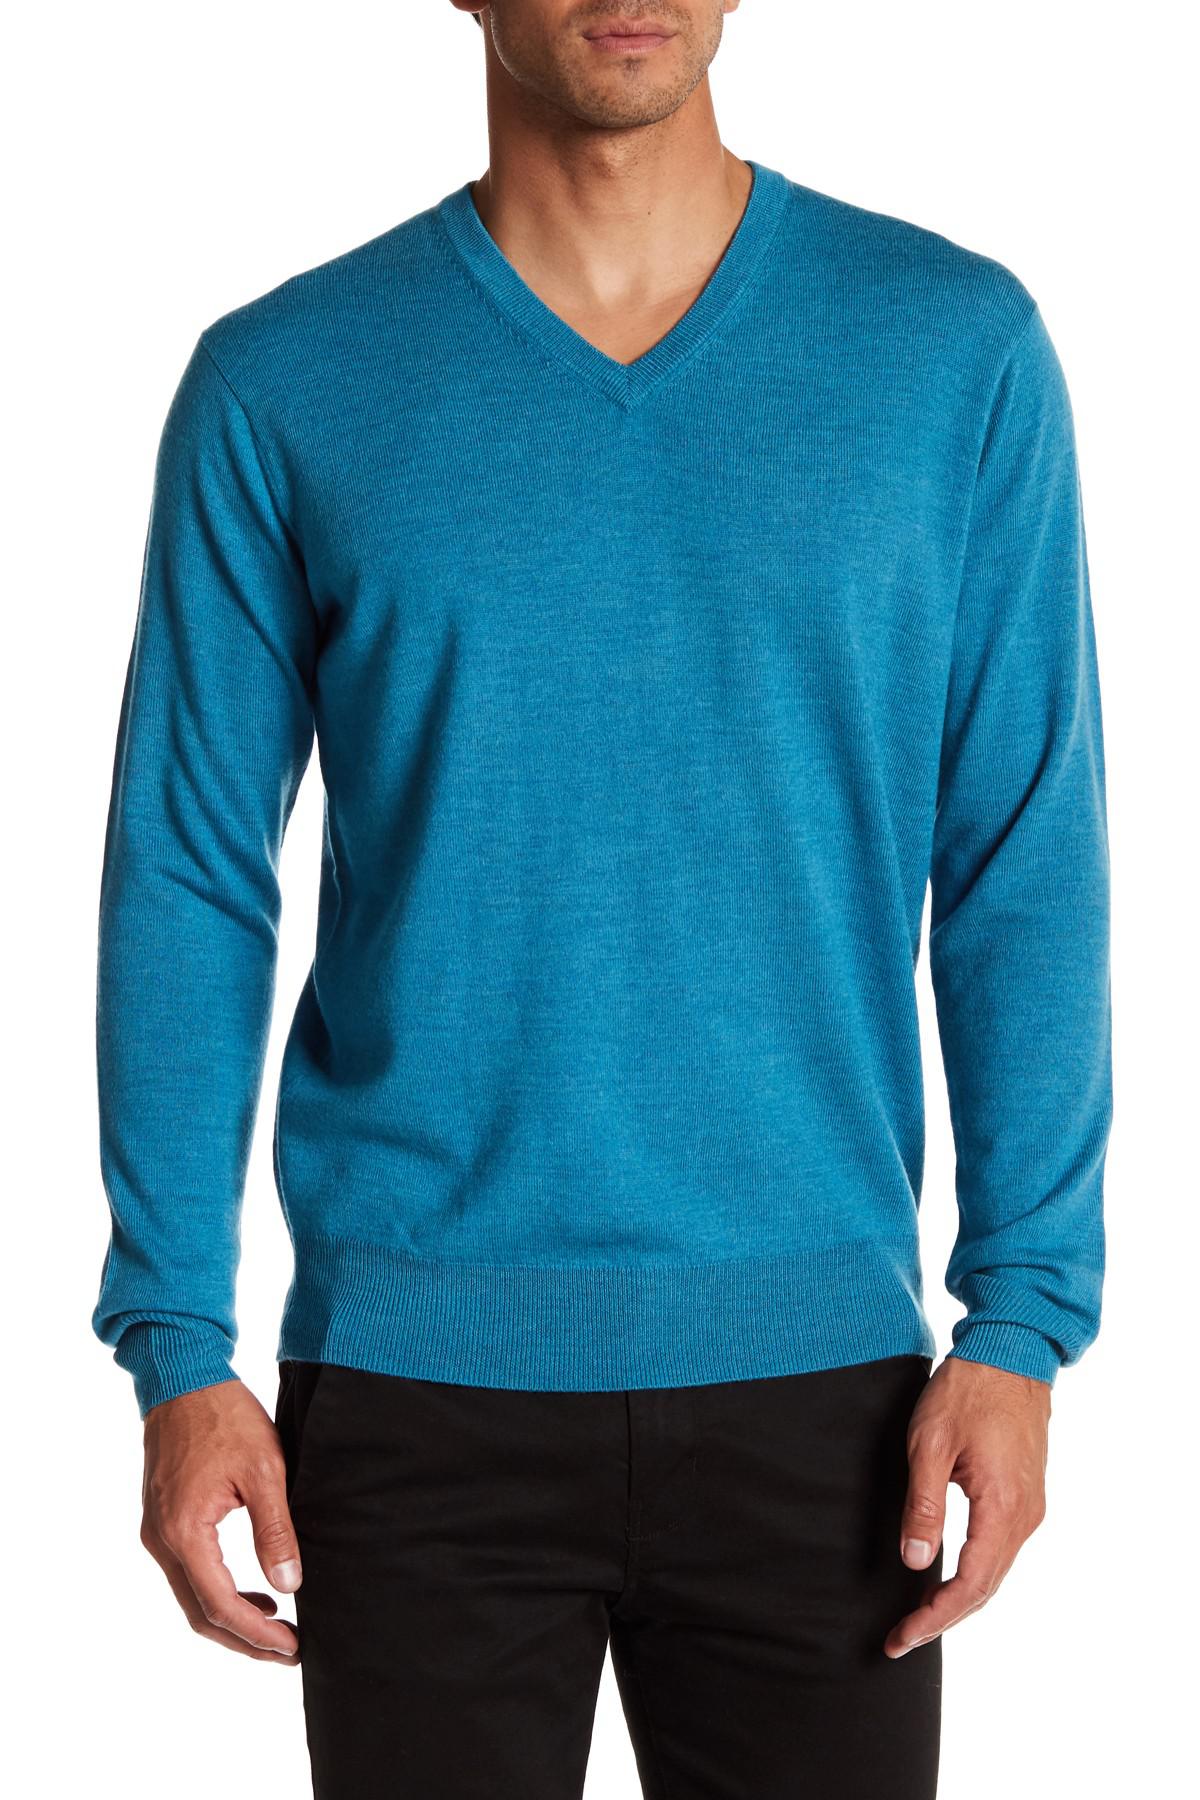 Lyst - Peter Millar Merino Wool V-neck Sweater in Blue for Men